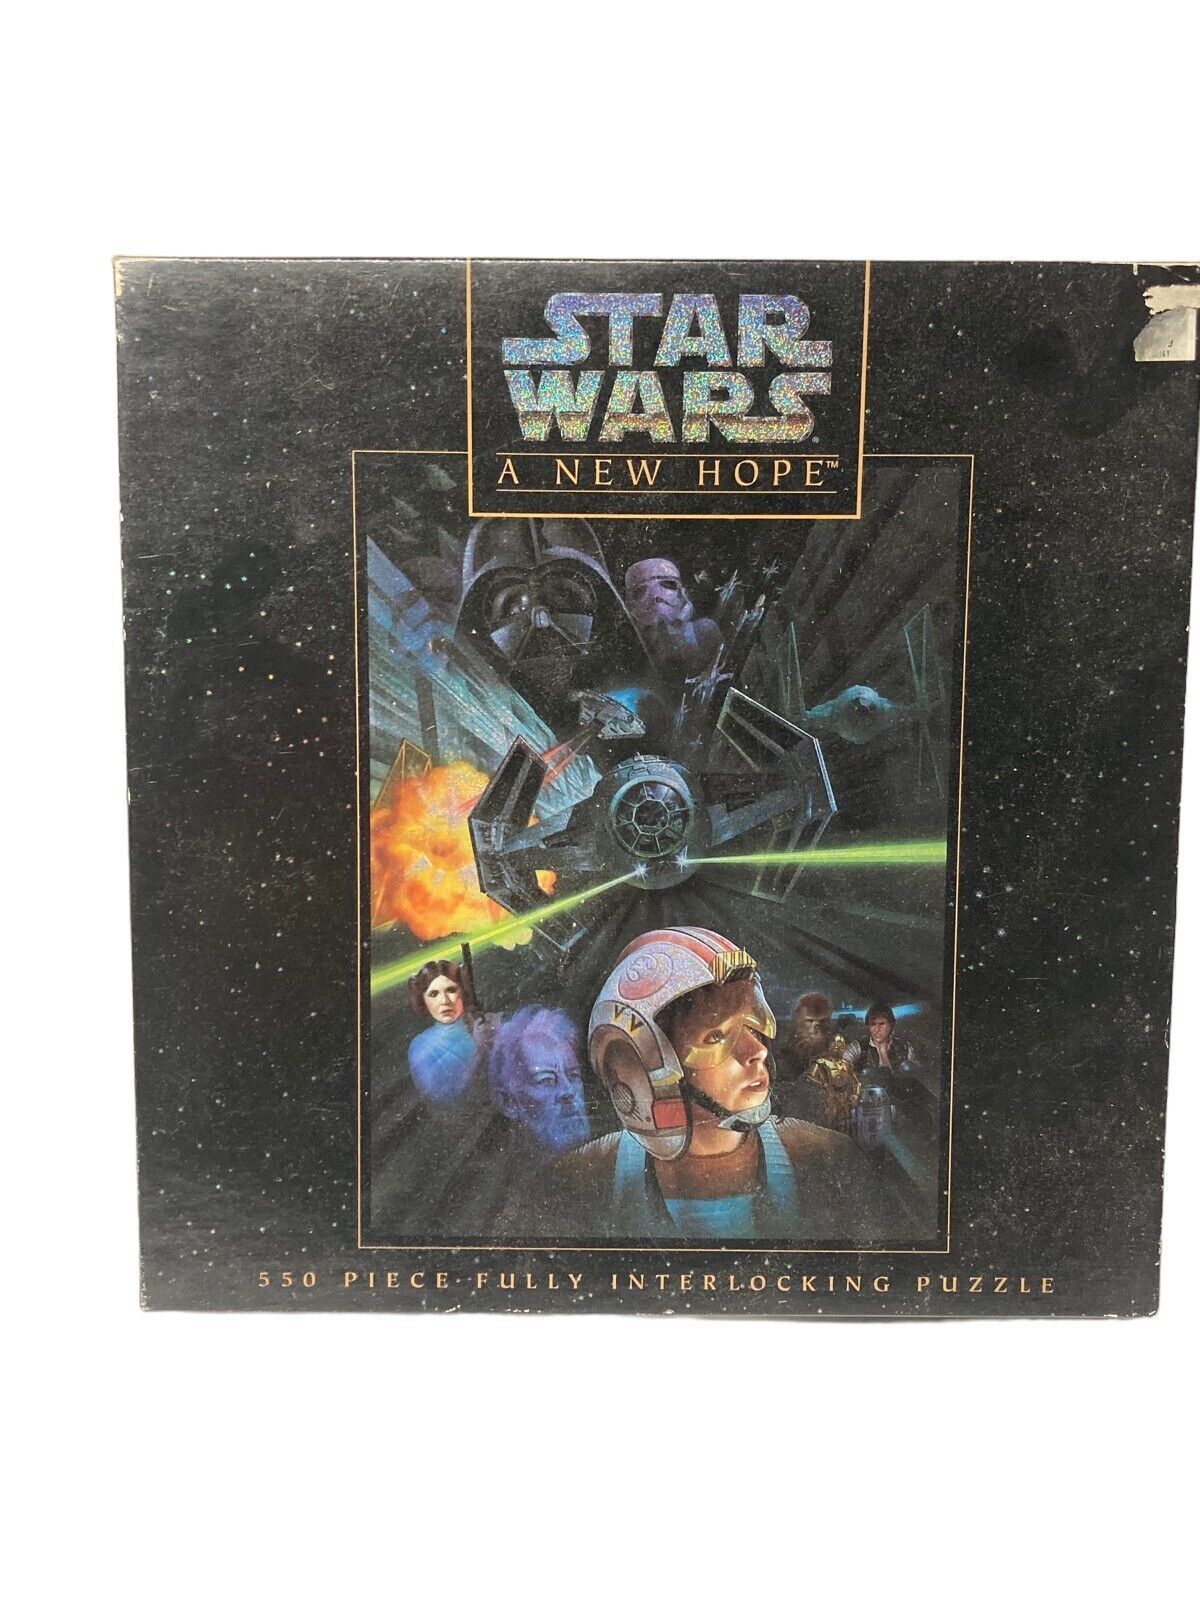 Star Wars A New Hope 550 Piece Jigsaw Puzzle 1995 Milton Bradley New Sealed - $23.36